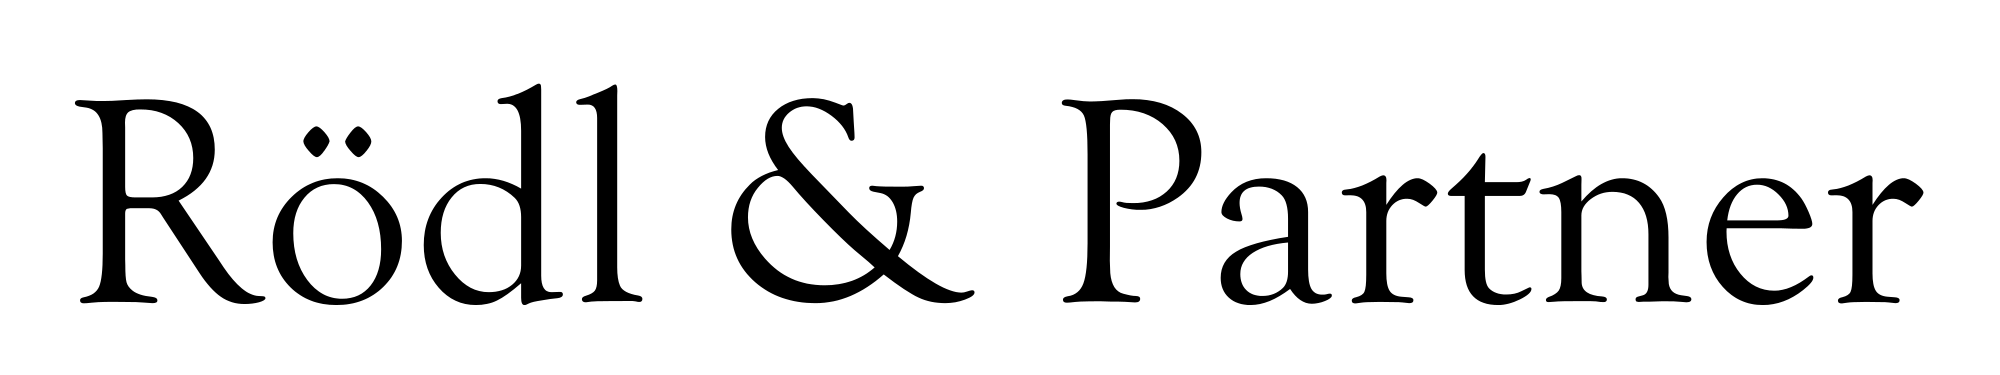 Roedl_logo.svg